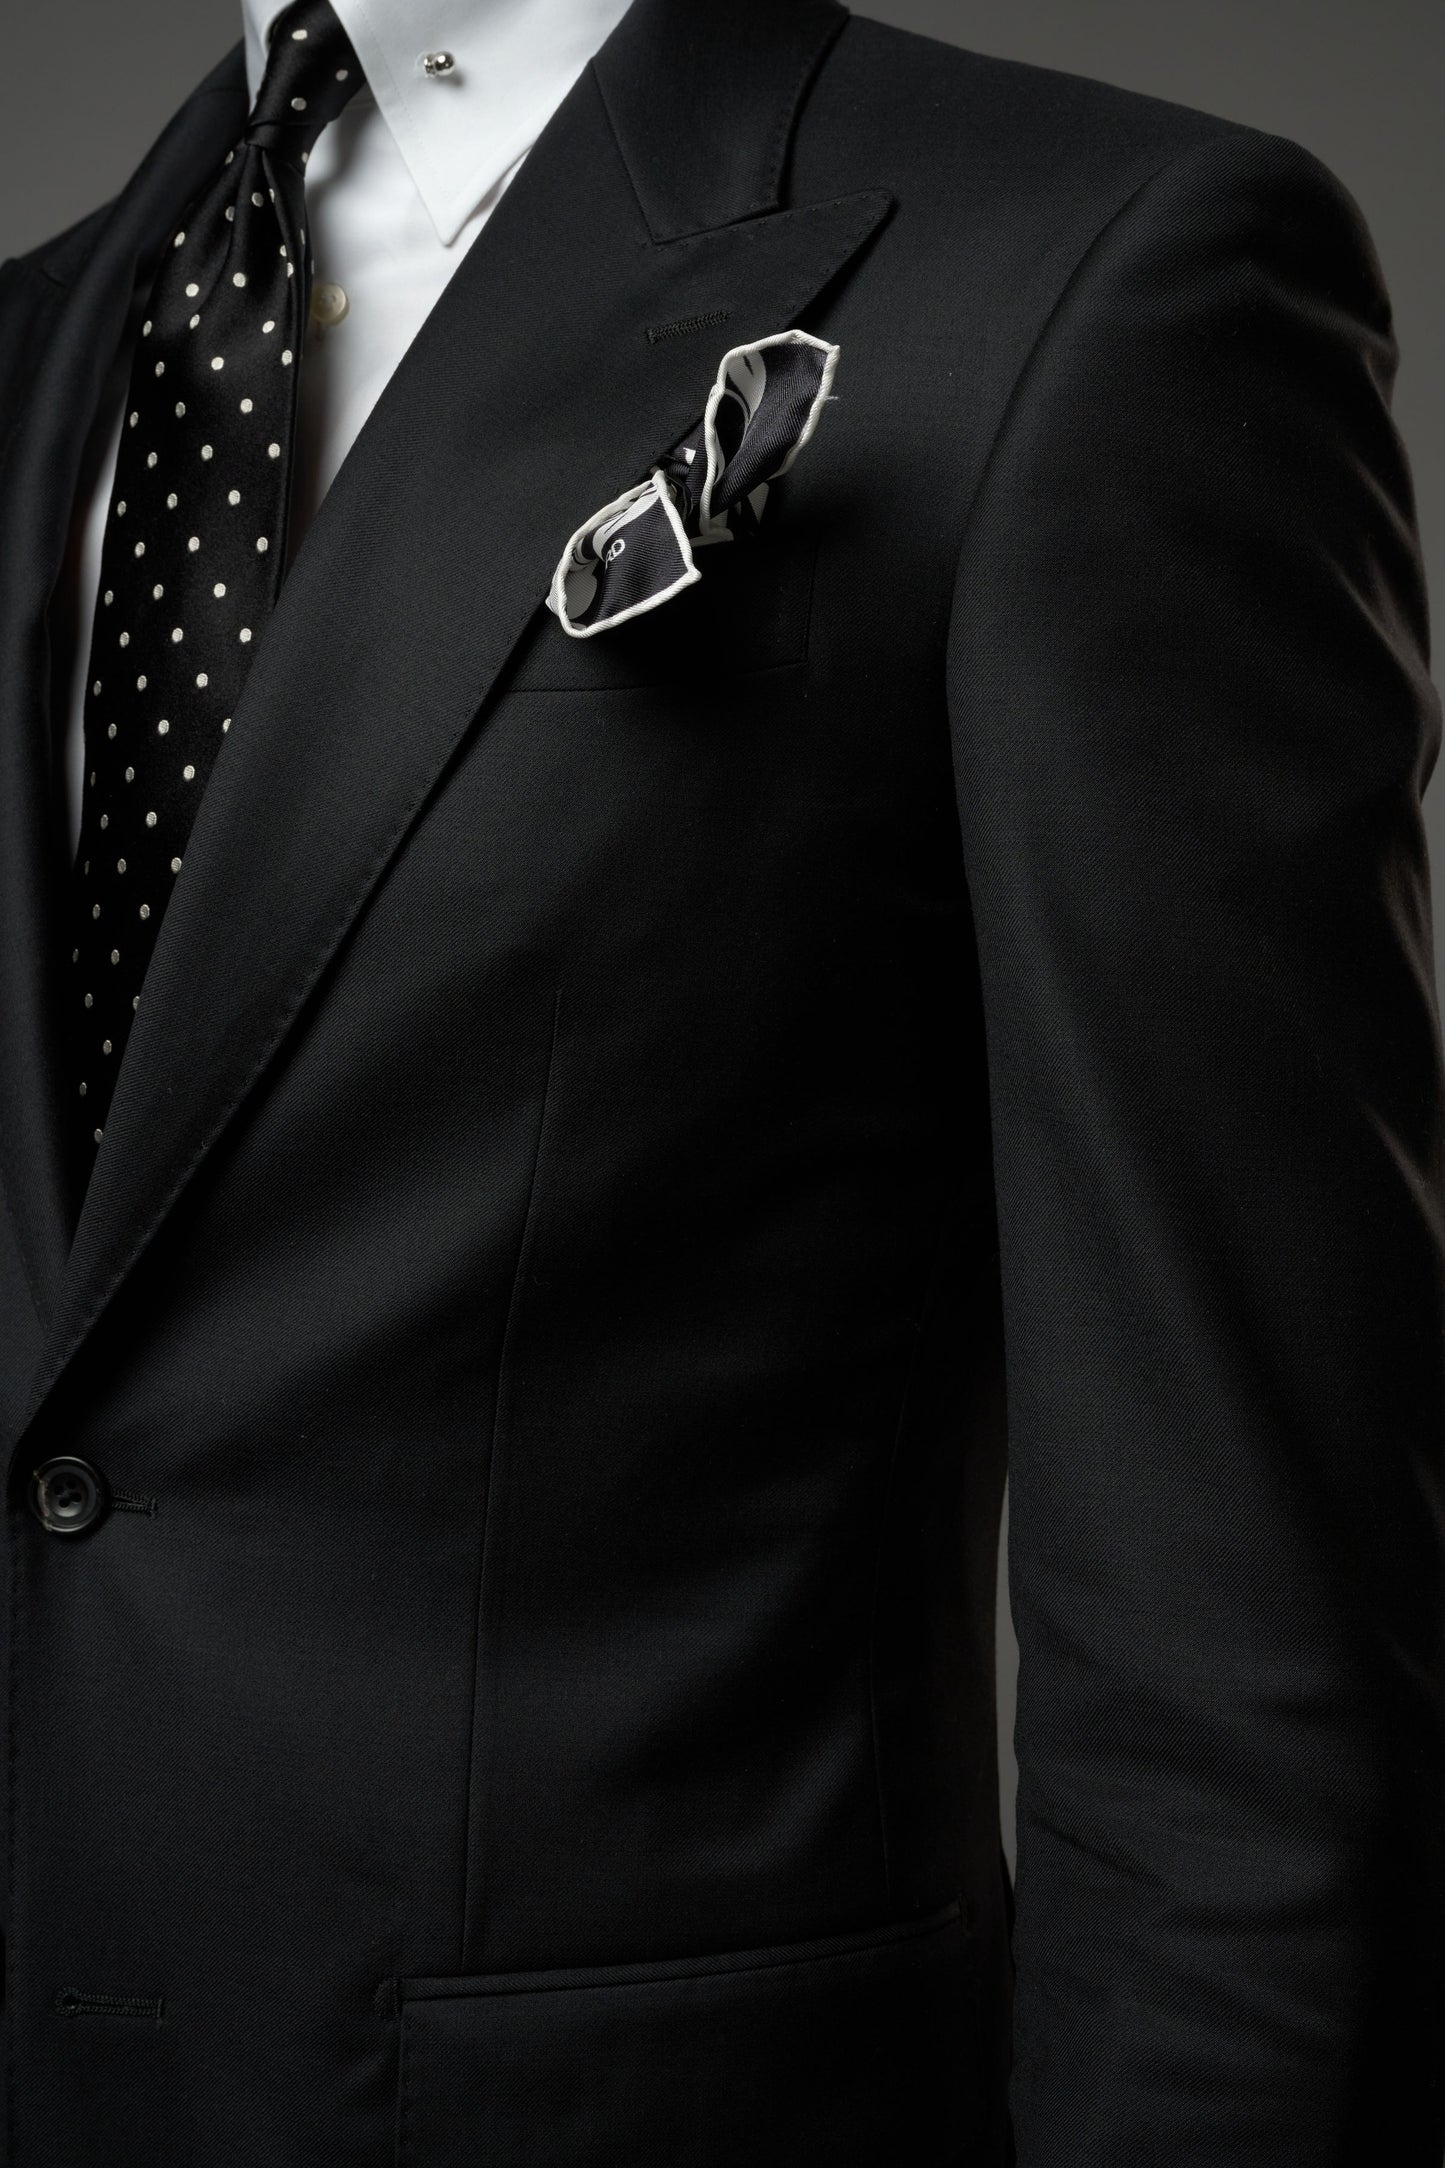 The Standard Black Suit